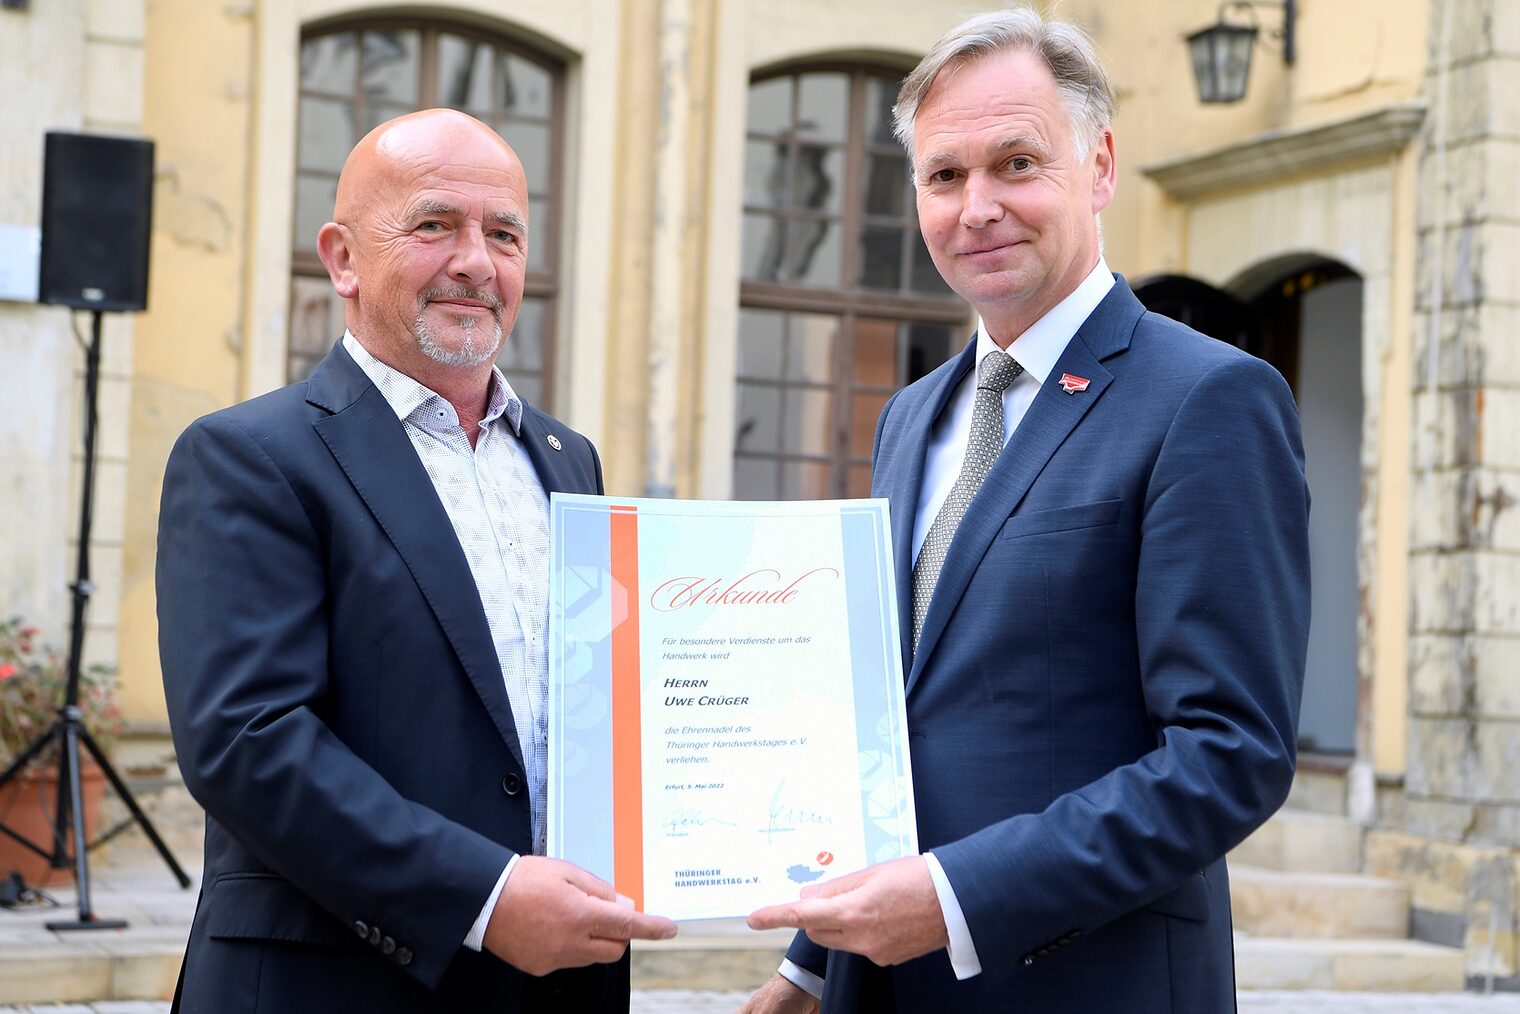 Für besondere Dienste um das Handwerk erhielt Uwe Crüger (li.) von Stefan Lobenstein die Ehrennadel des Thüringer Handwerkstages e.V.